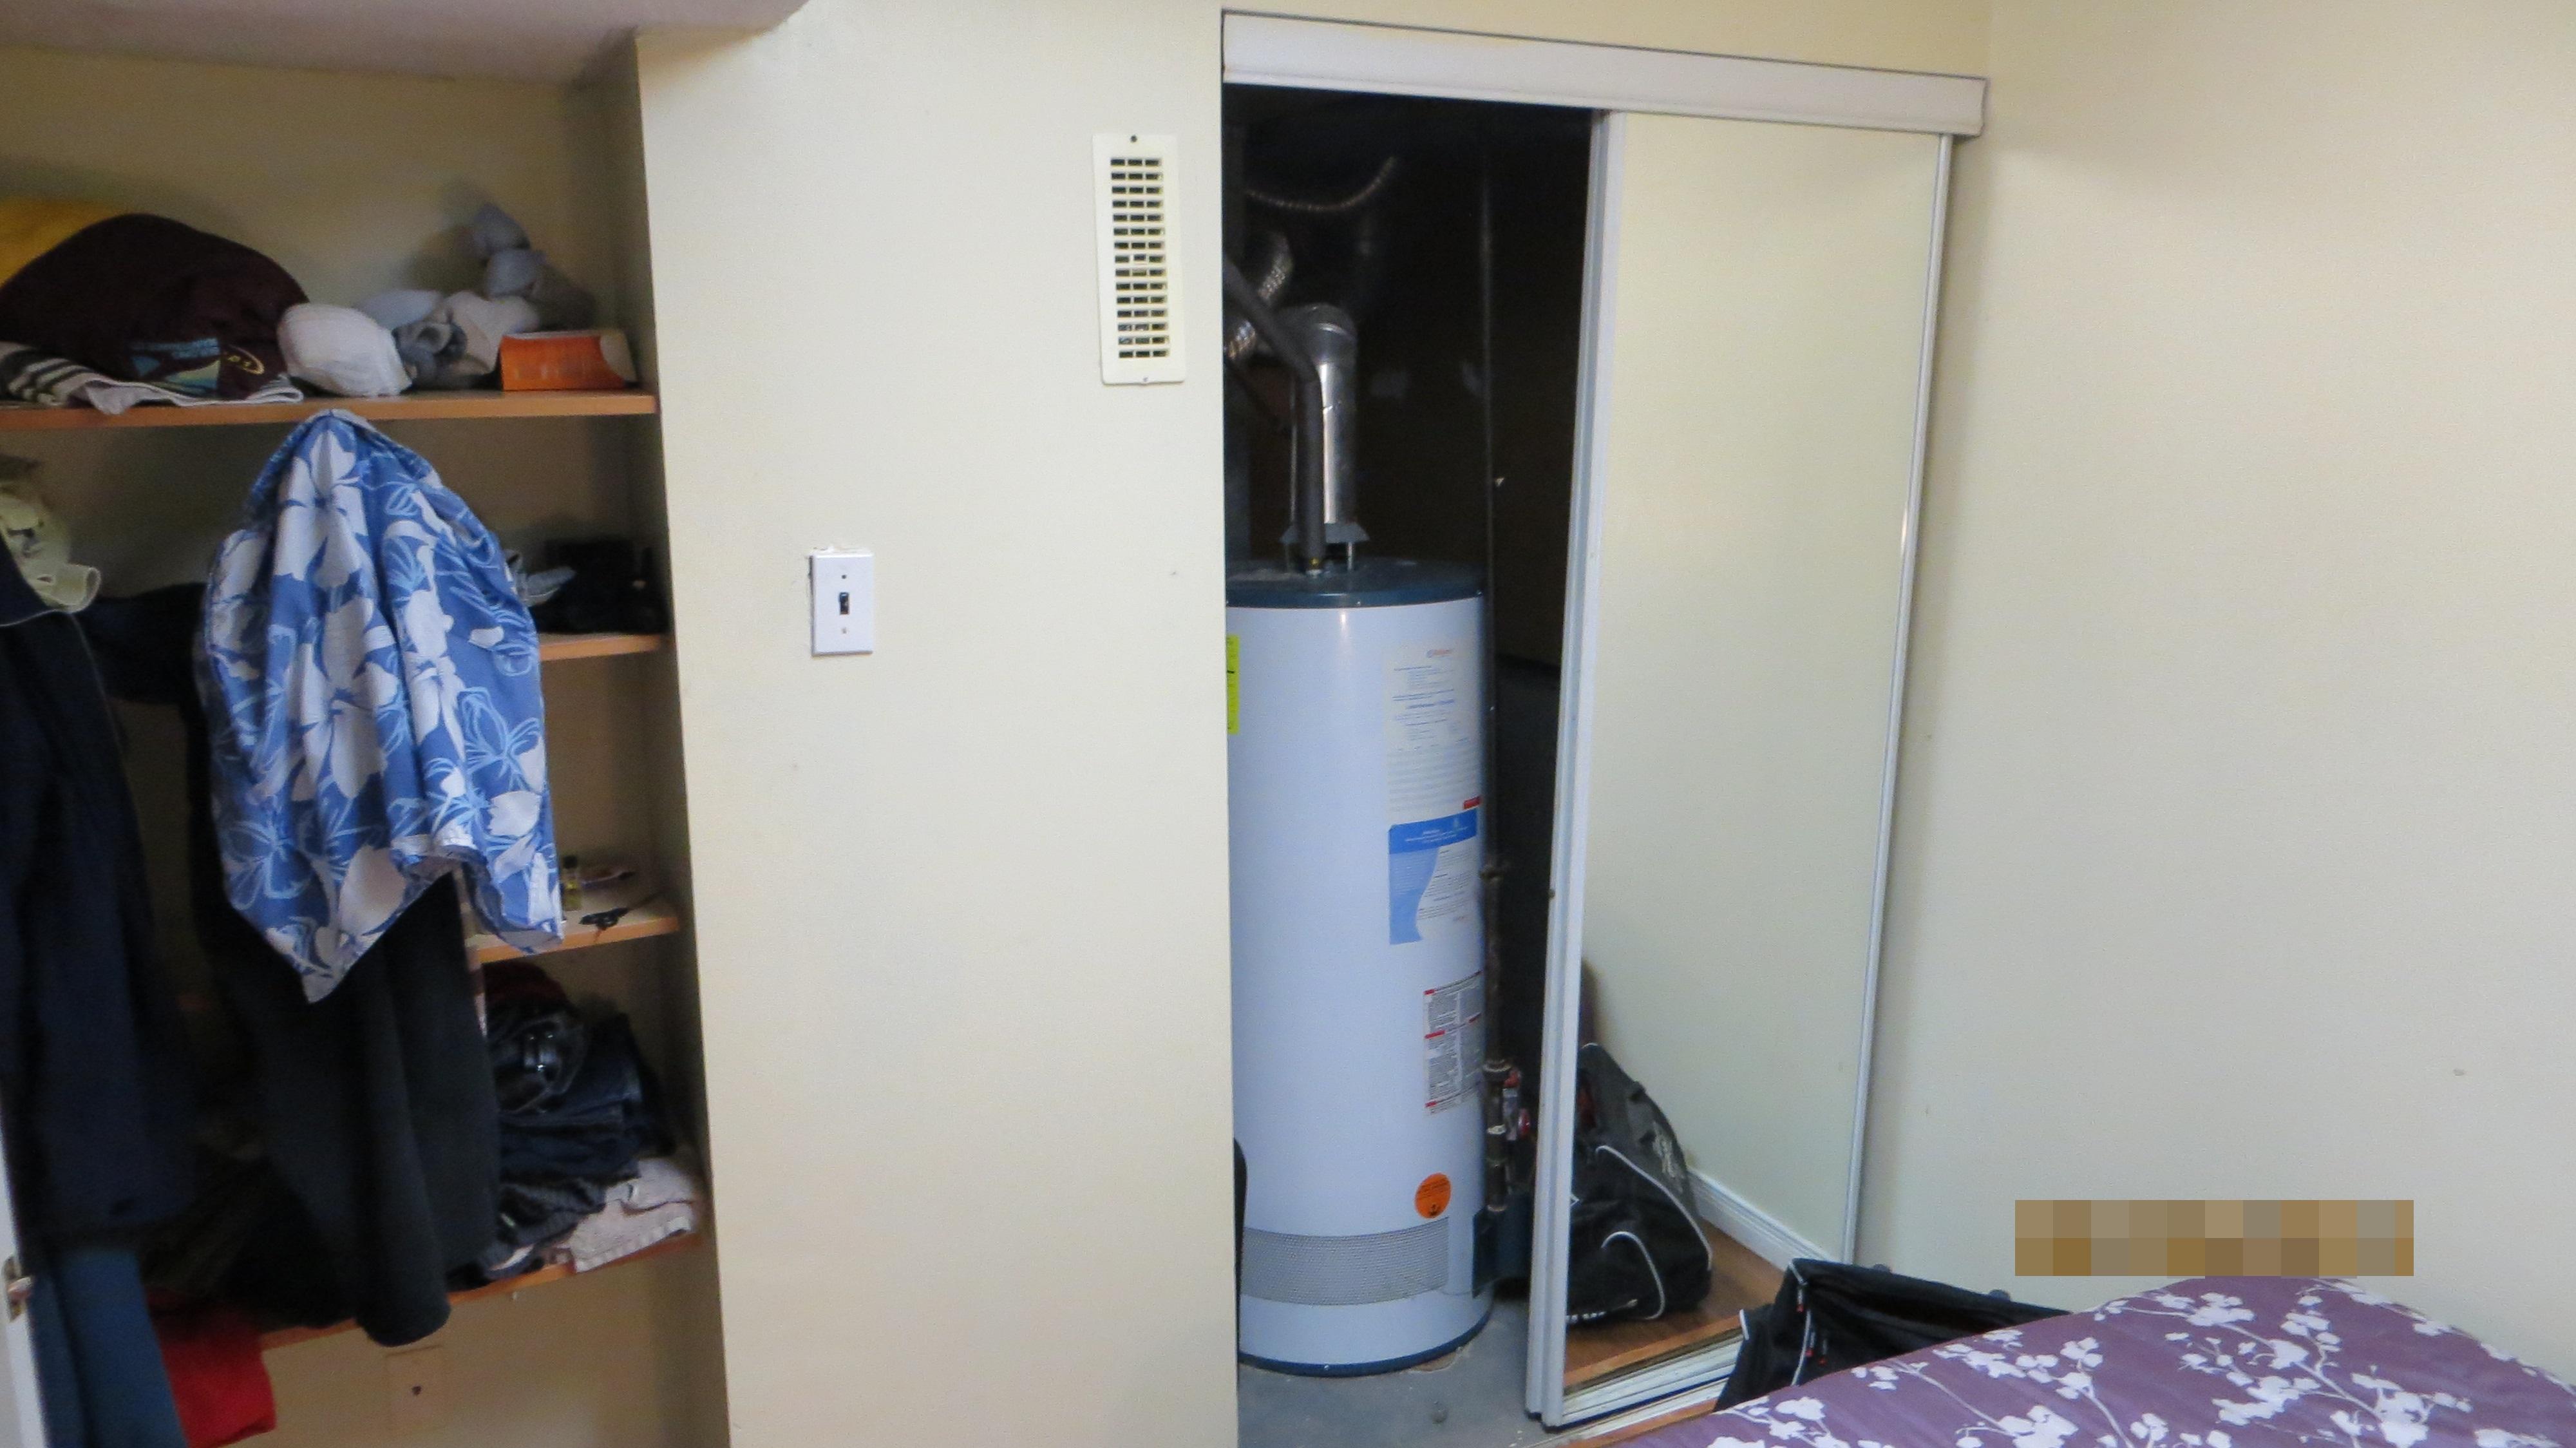 Hot water tank in bedroom closet